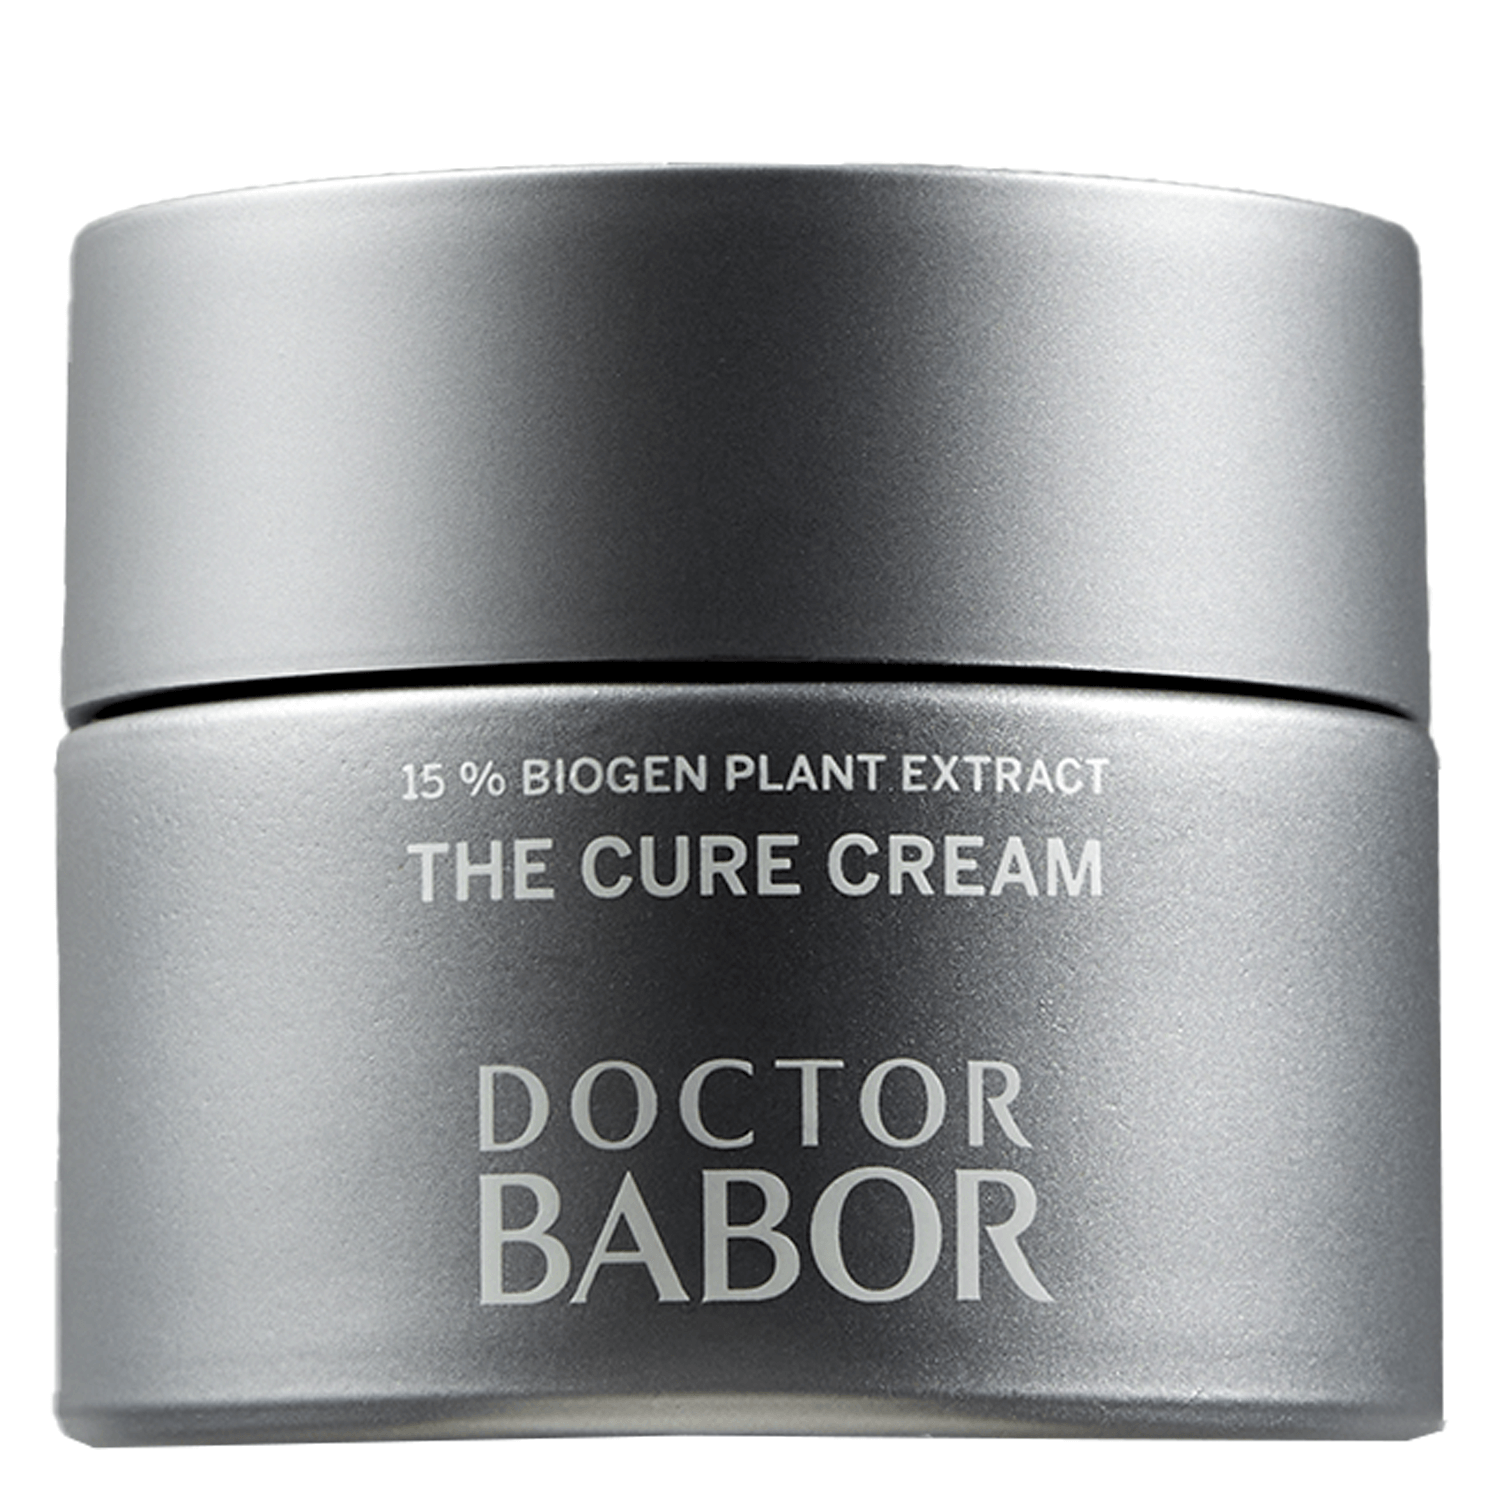 Produktbild von DOCTOR BABOR - The Cure Cream